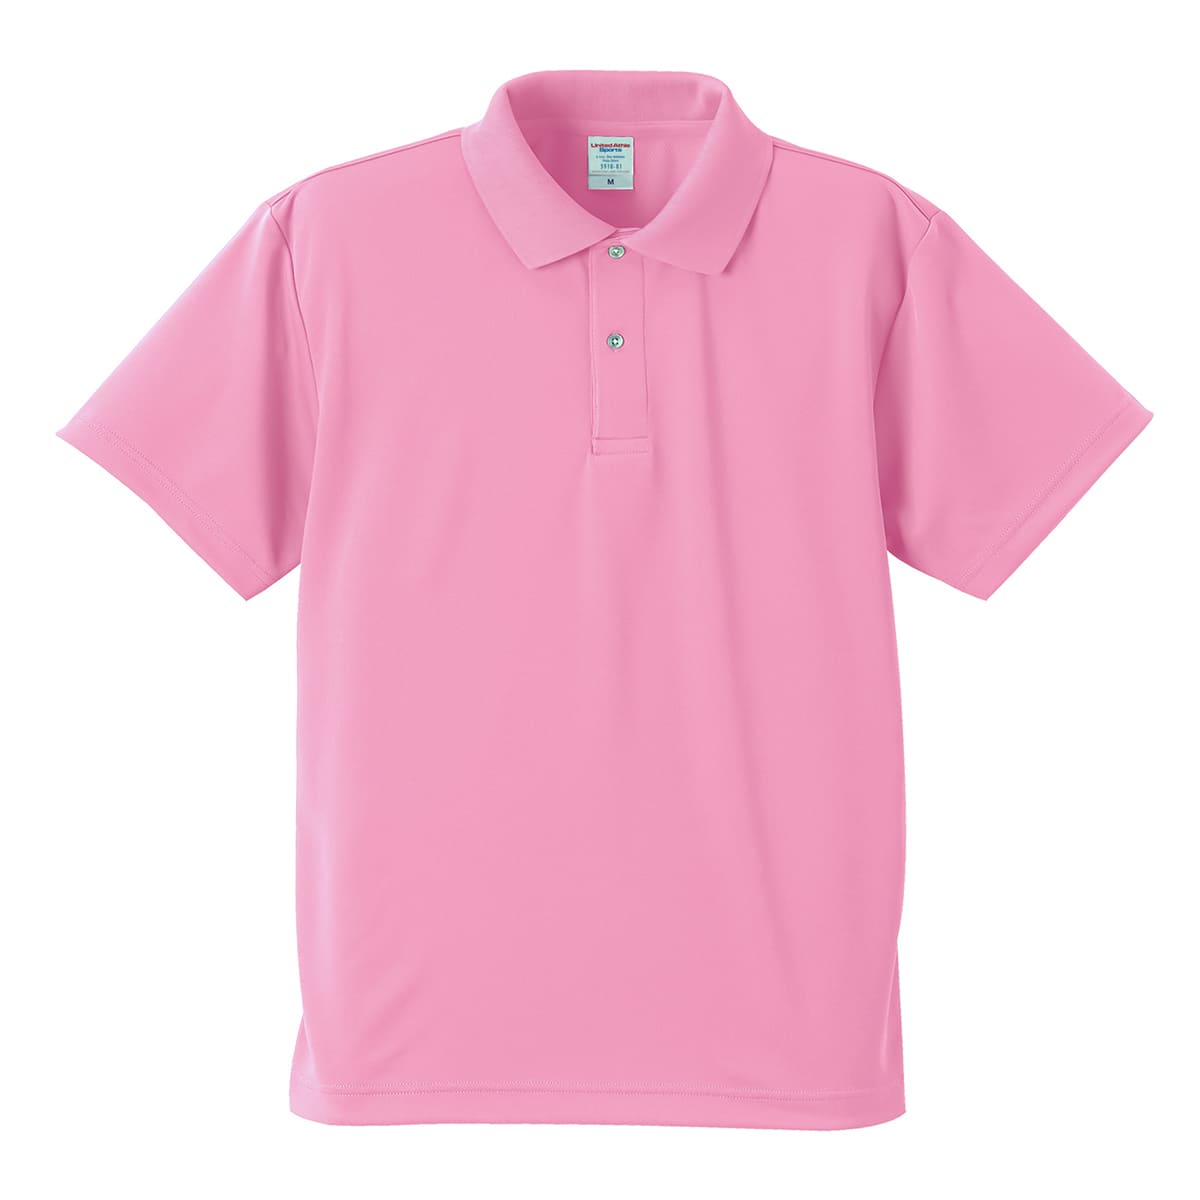 4.1オンス ドライアスレチック ポロシャツ | ビッグサイズ | 1枚 | 5910-01 | ピンク